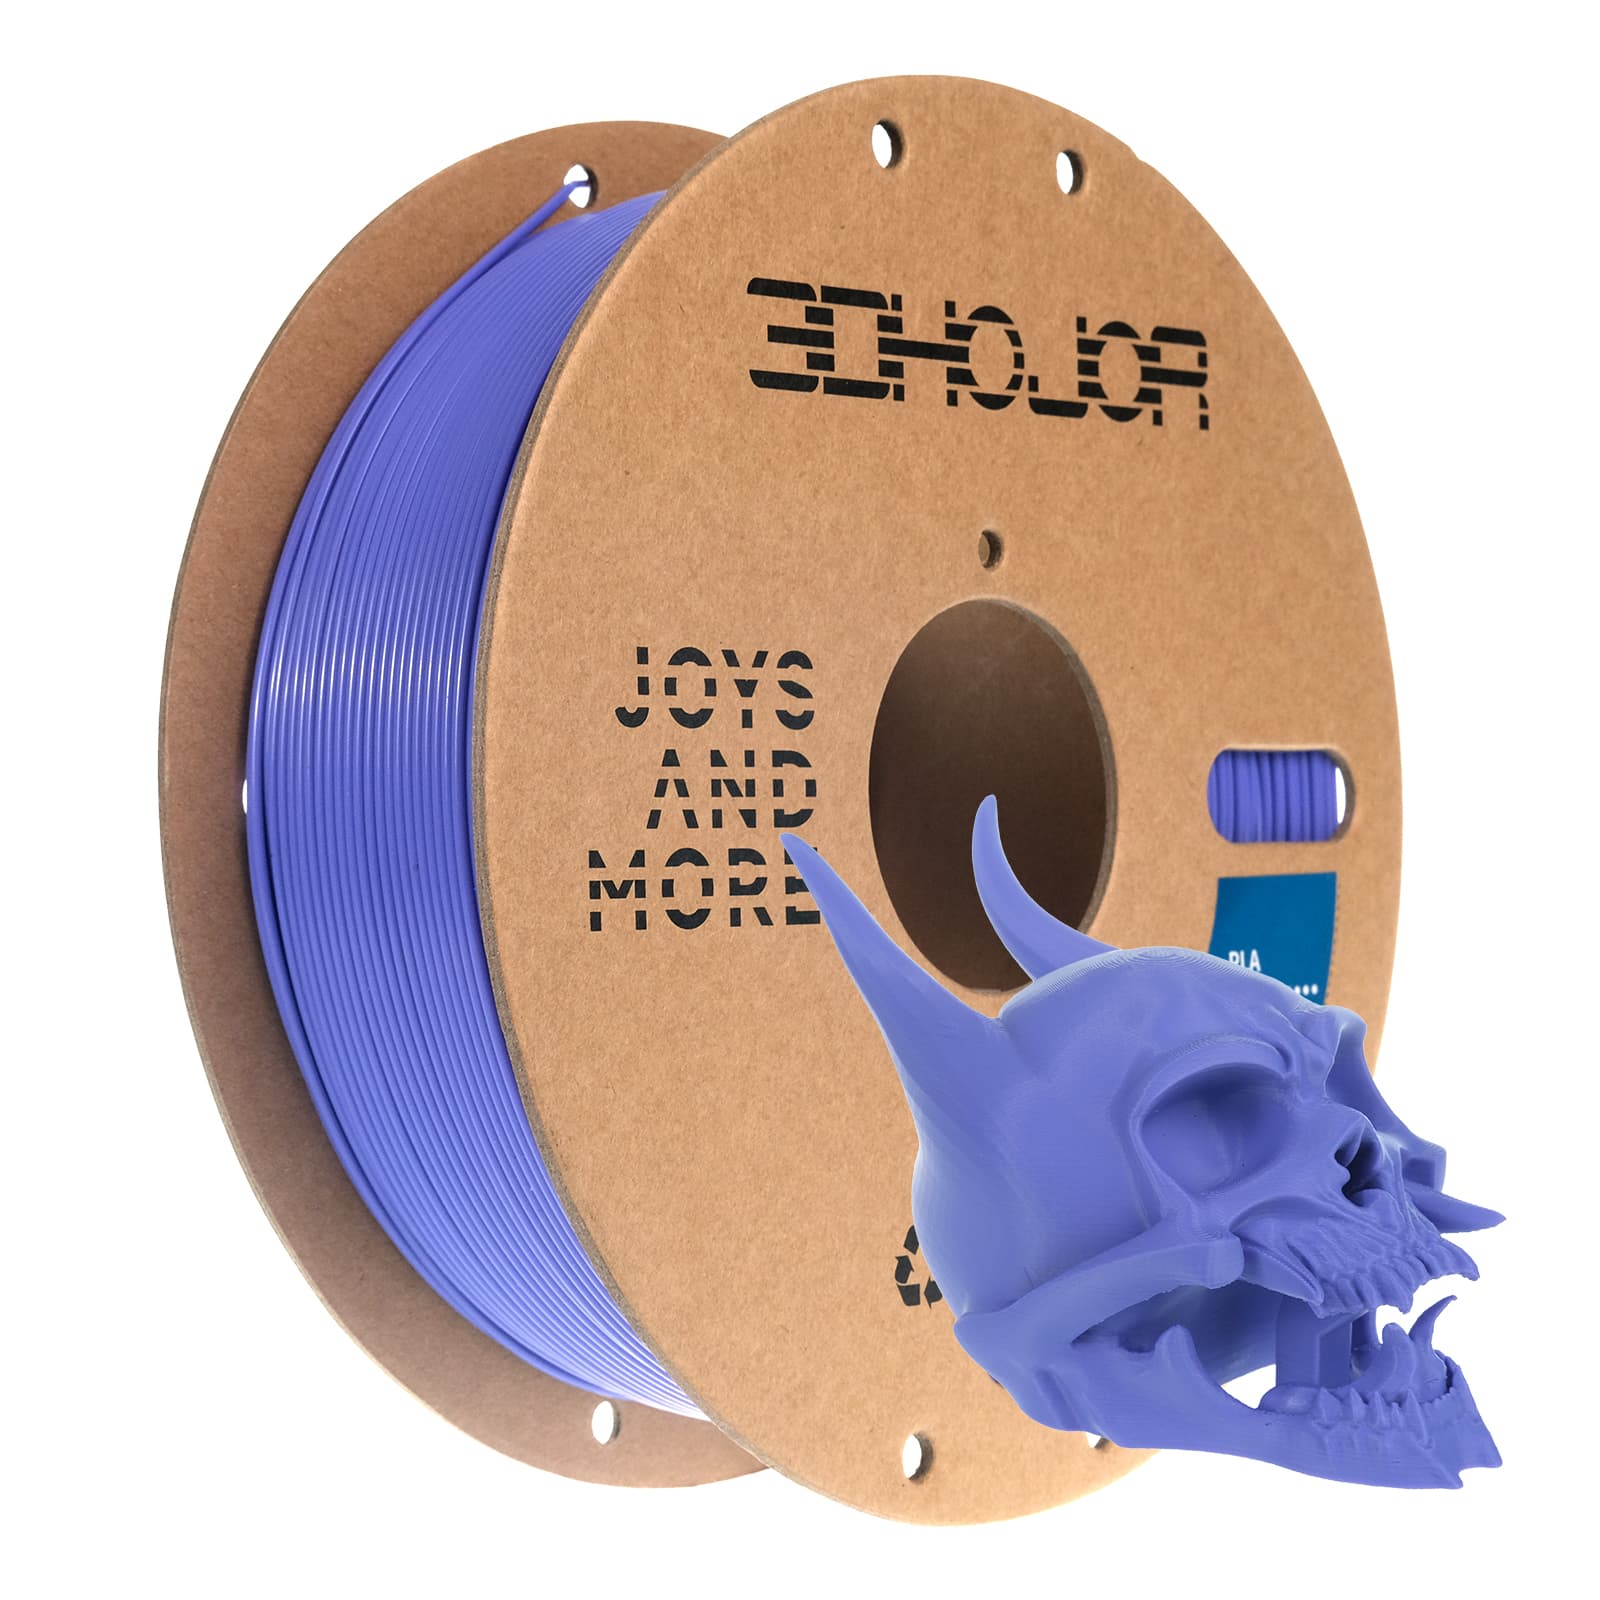 3DHoJor PLA Filament 1.75mm,Fit Most 3D FDM Printer,Periwinkle Blue